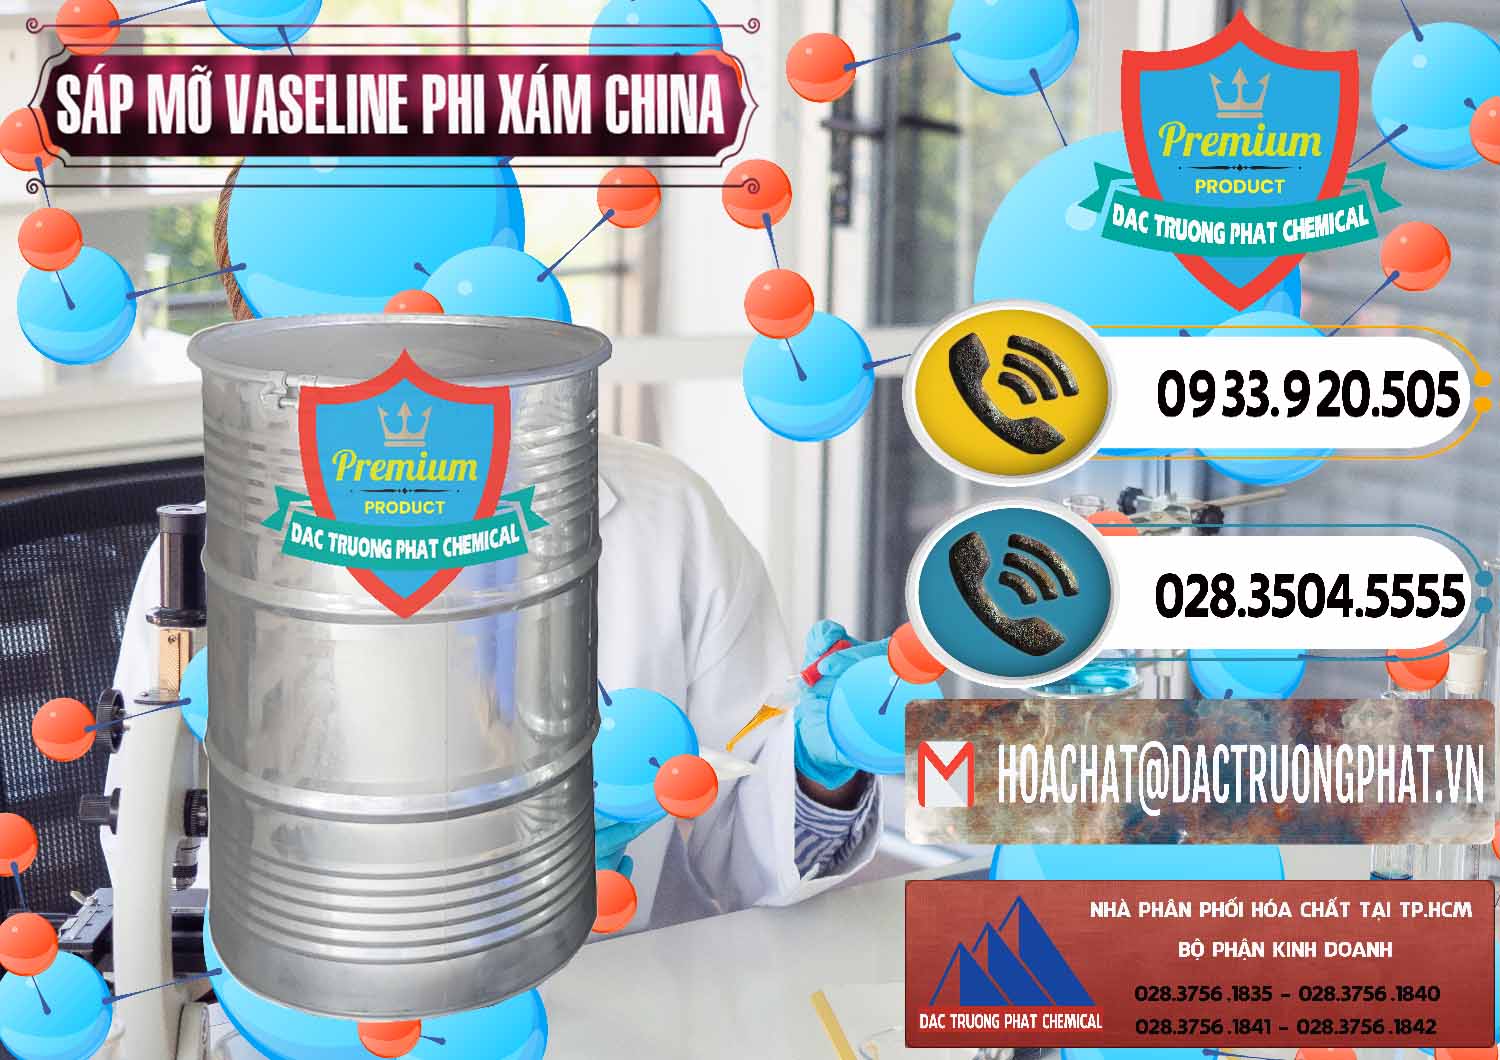 Đơn vị chuyên bán và cung ứng Sáp Mỡ Vaseline Phi Xám Trung Quốc China - 0291 - Công ty phân phối _ cung ứng hóa chất tại TP.HCM - hoachatdetnhuom.vn